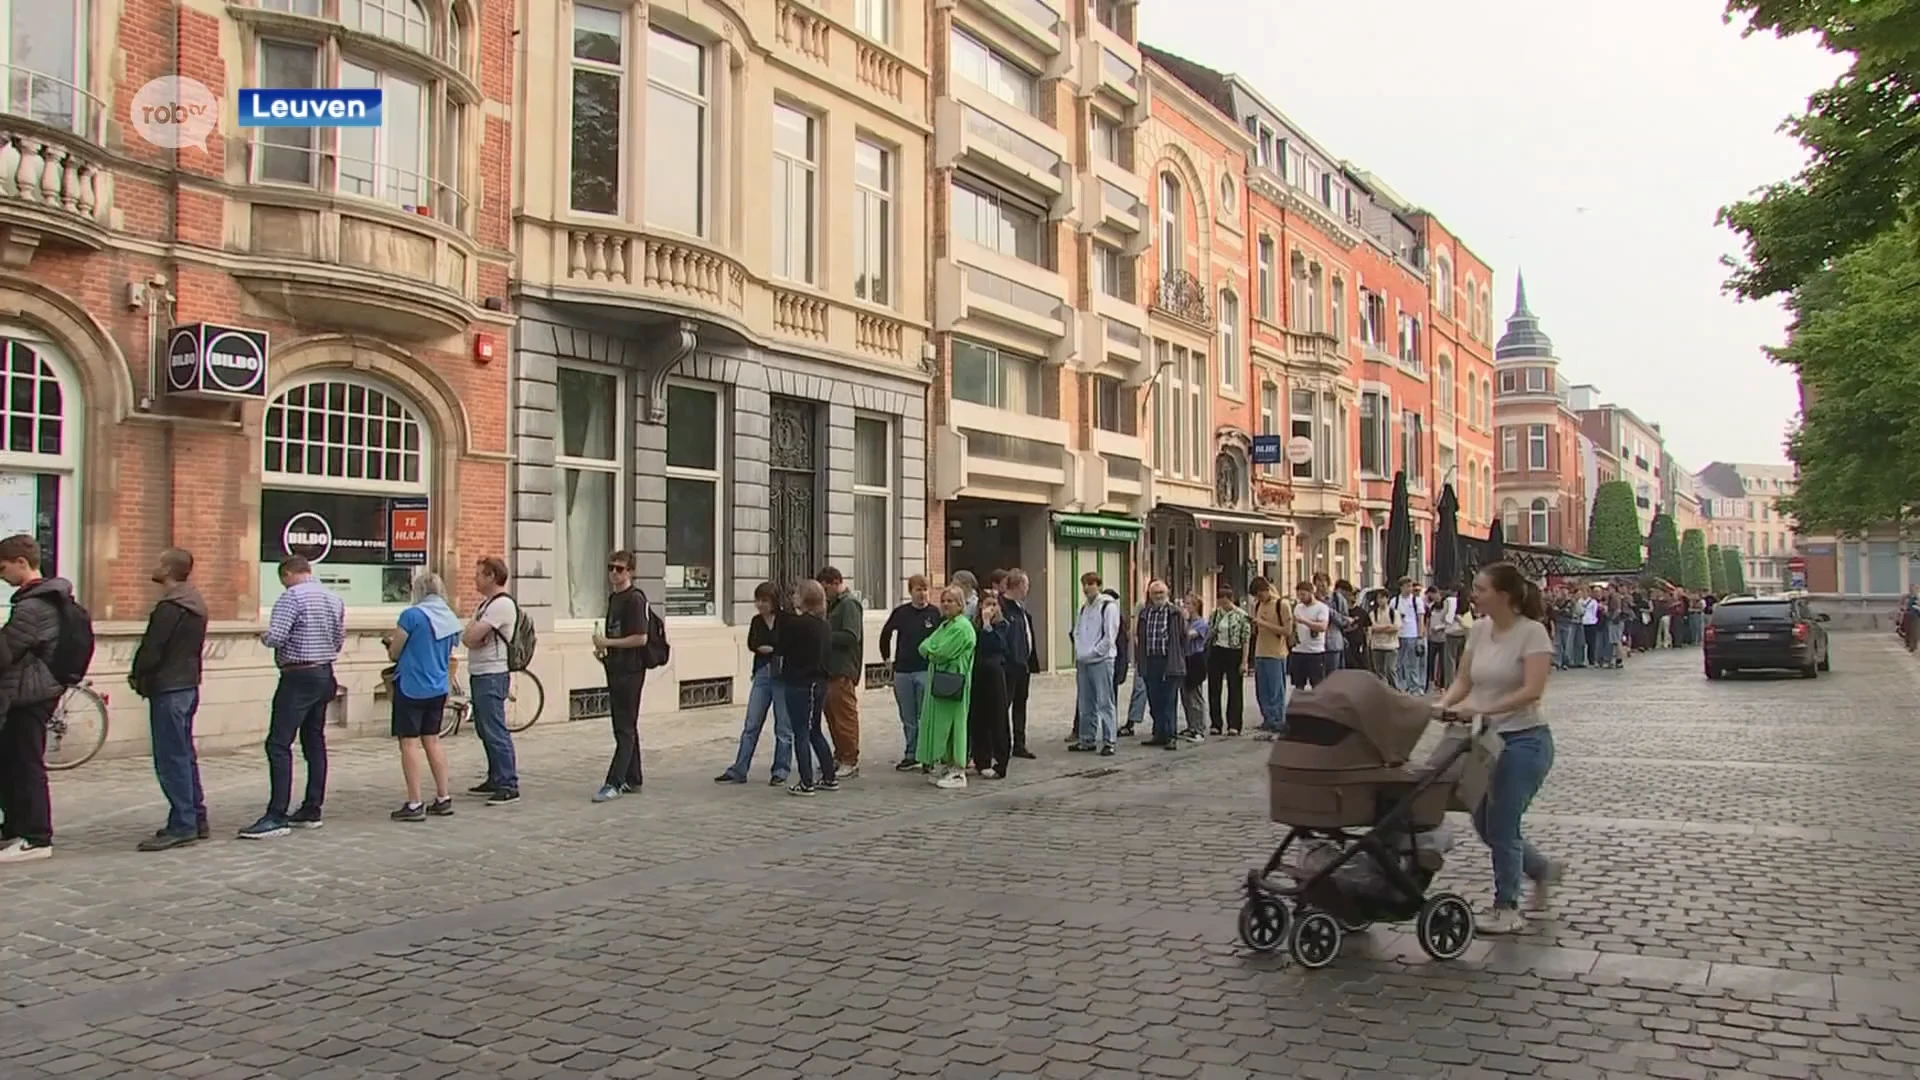 Gigantische wachtrij voor uitverkoop Bilbo Records in Leuven: "Eén van mijn favoriete winkels verdwijnt"